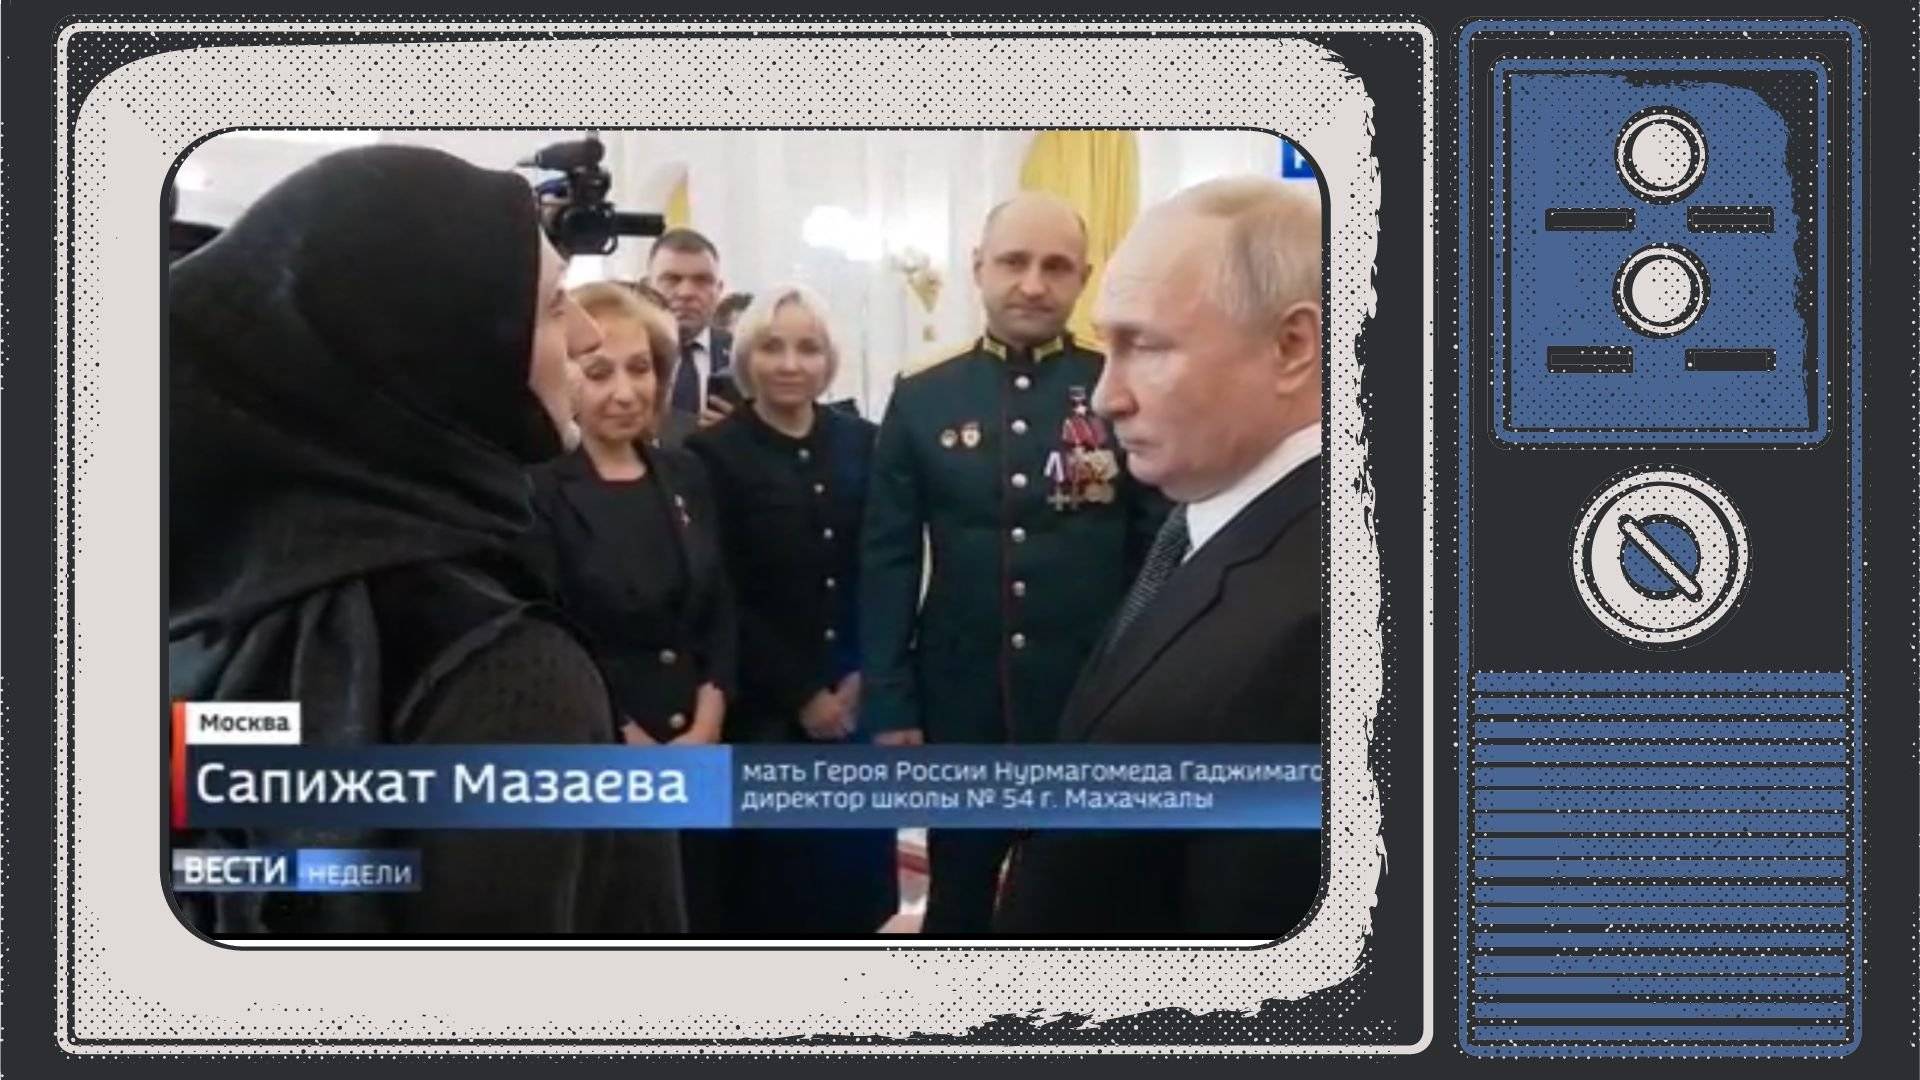 Grafika. W ramce stareg telewizora zdjęcie: Kobieta w żałobnej chuście, kobiety w żałobie i męzczyzna w galowym mundurze rozmawiają z Putinem